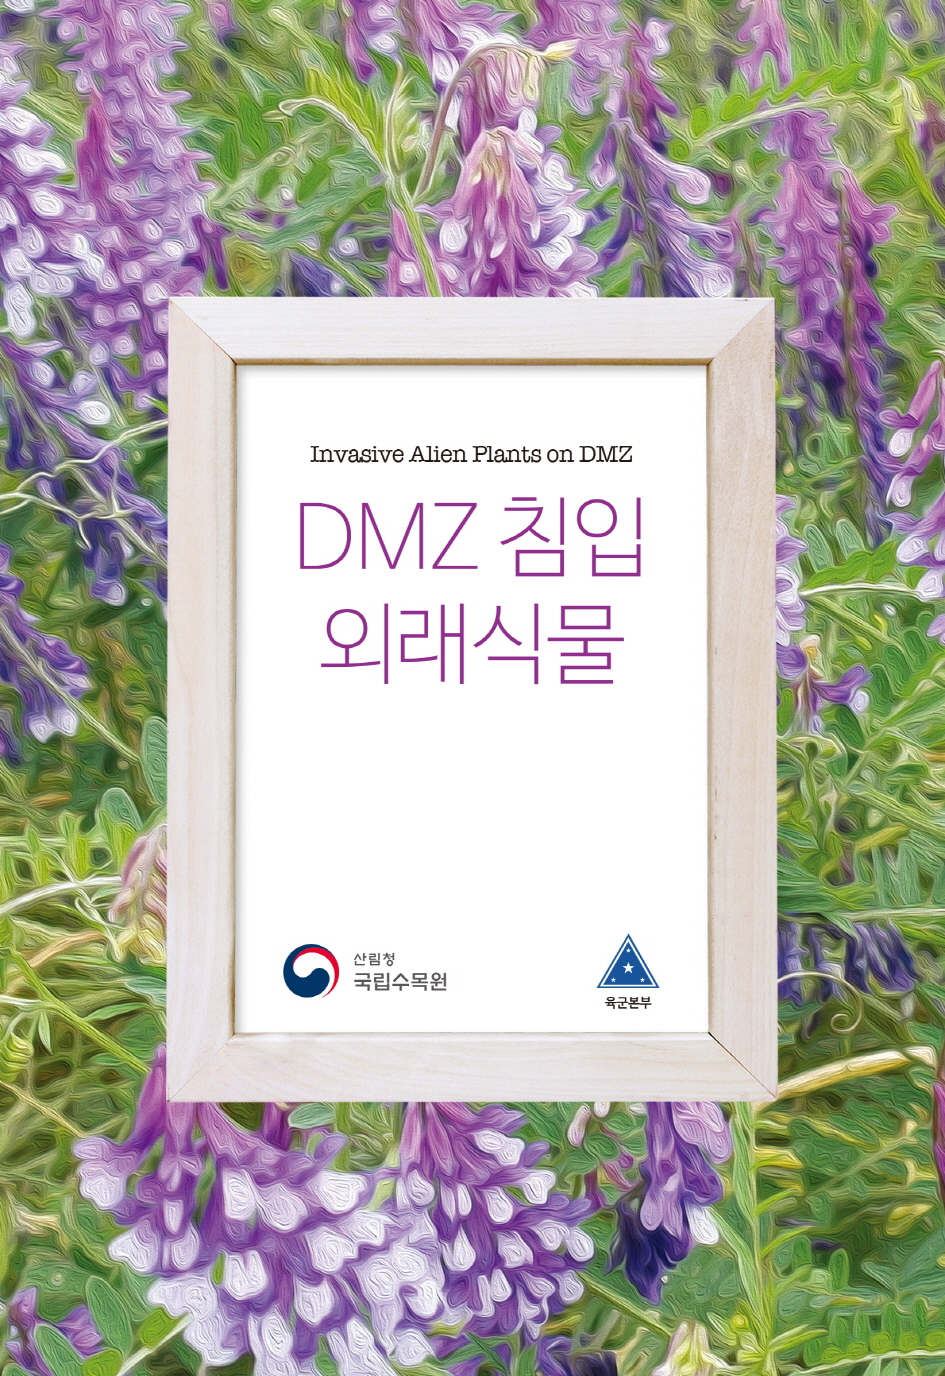 국립수목원과 육군본부의 DMZ 자생식물 보전 위한 첫걸음, 「DMZ 침입외래식물」 발간 이미지1